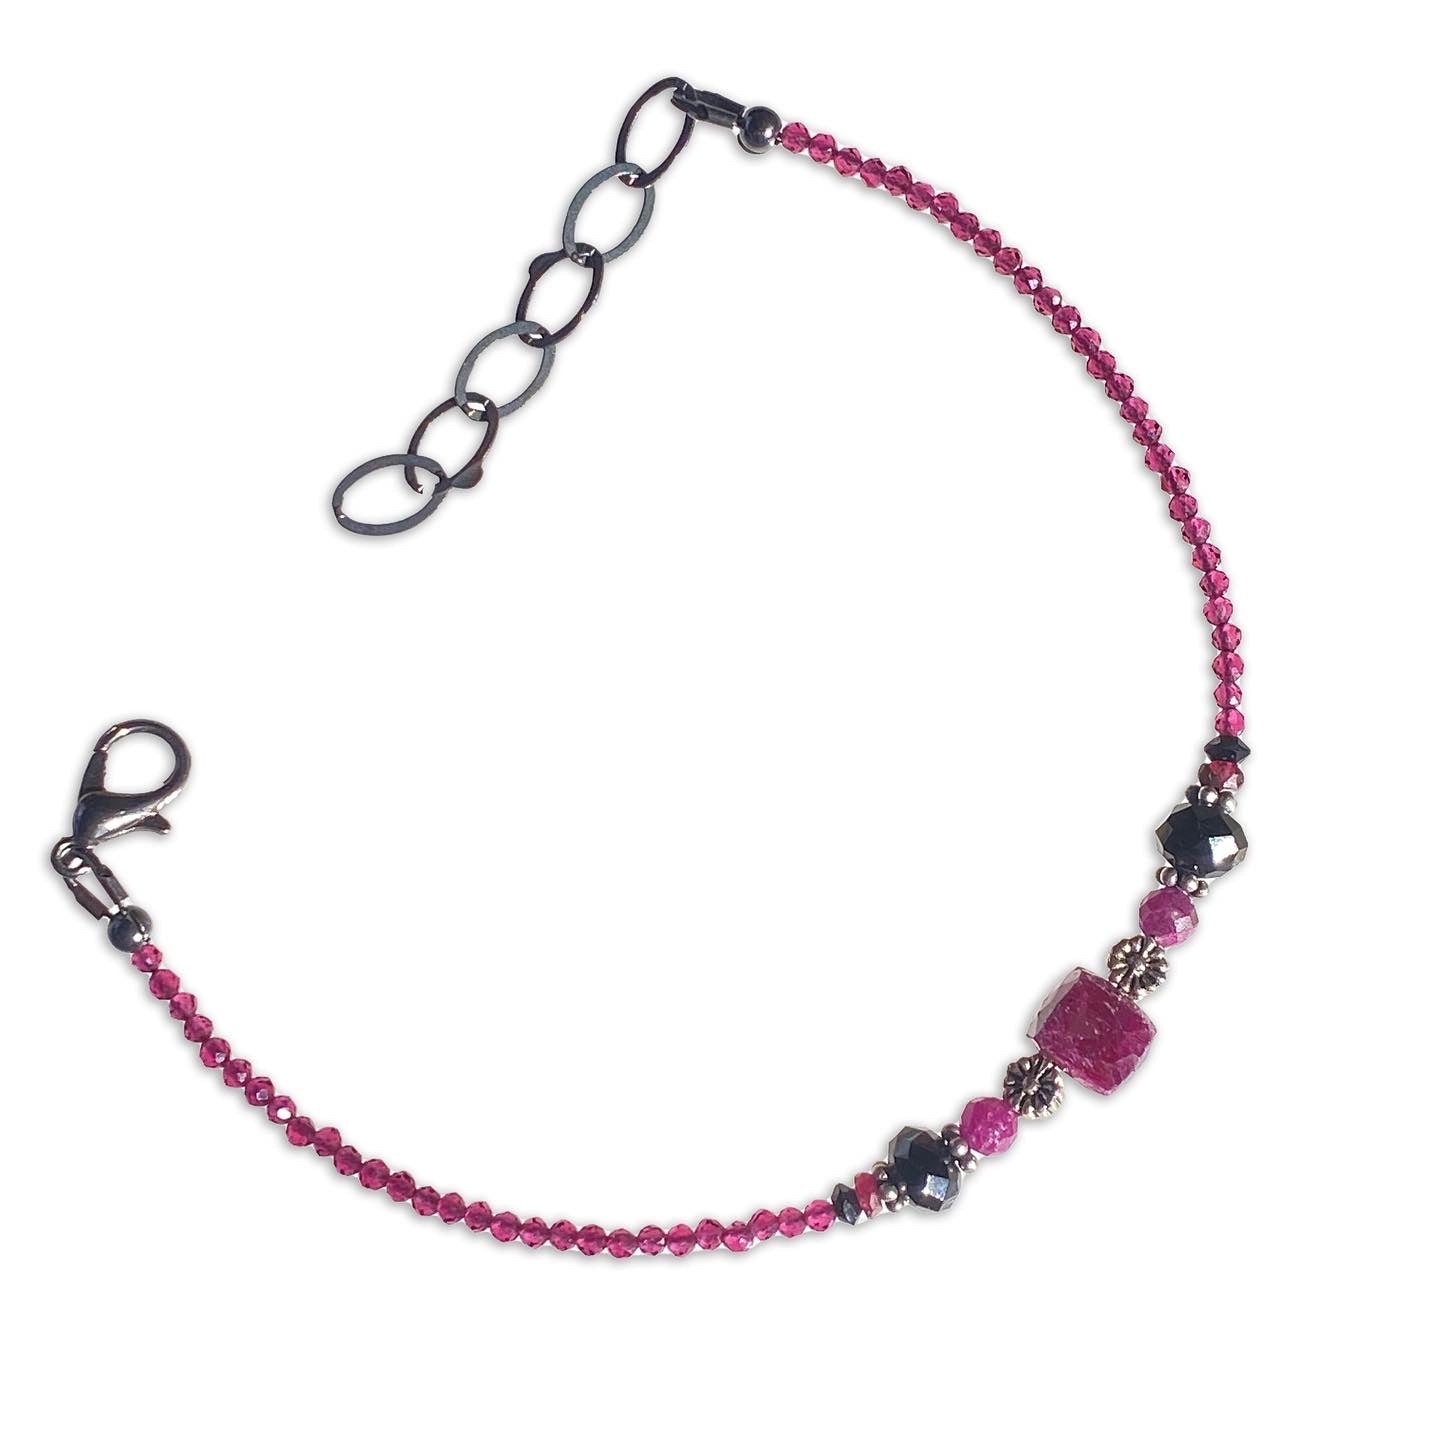 Ruby, Black Spinel, Red Spinel gemstones, and Sterling Silver Bracelet